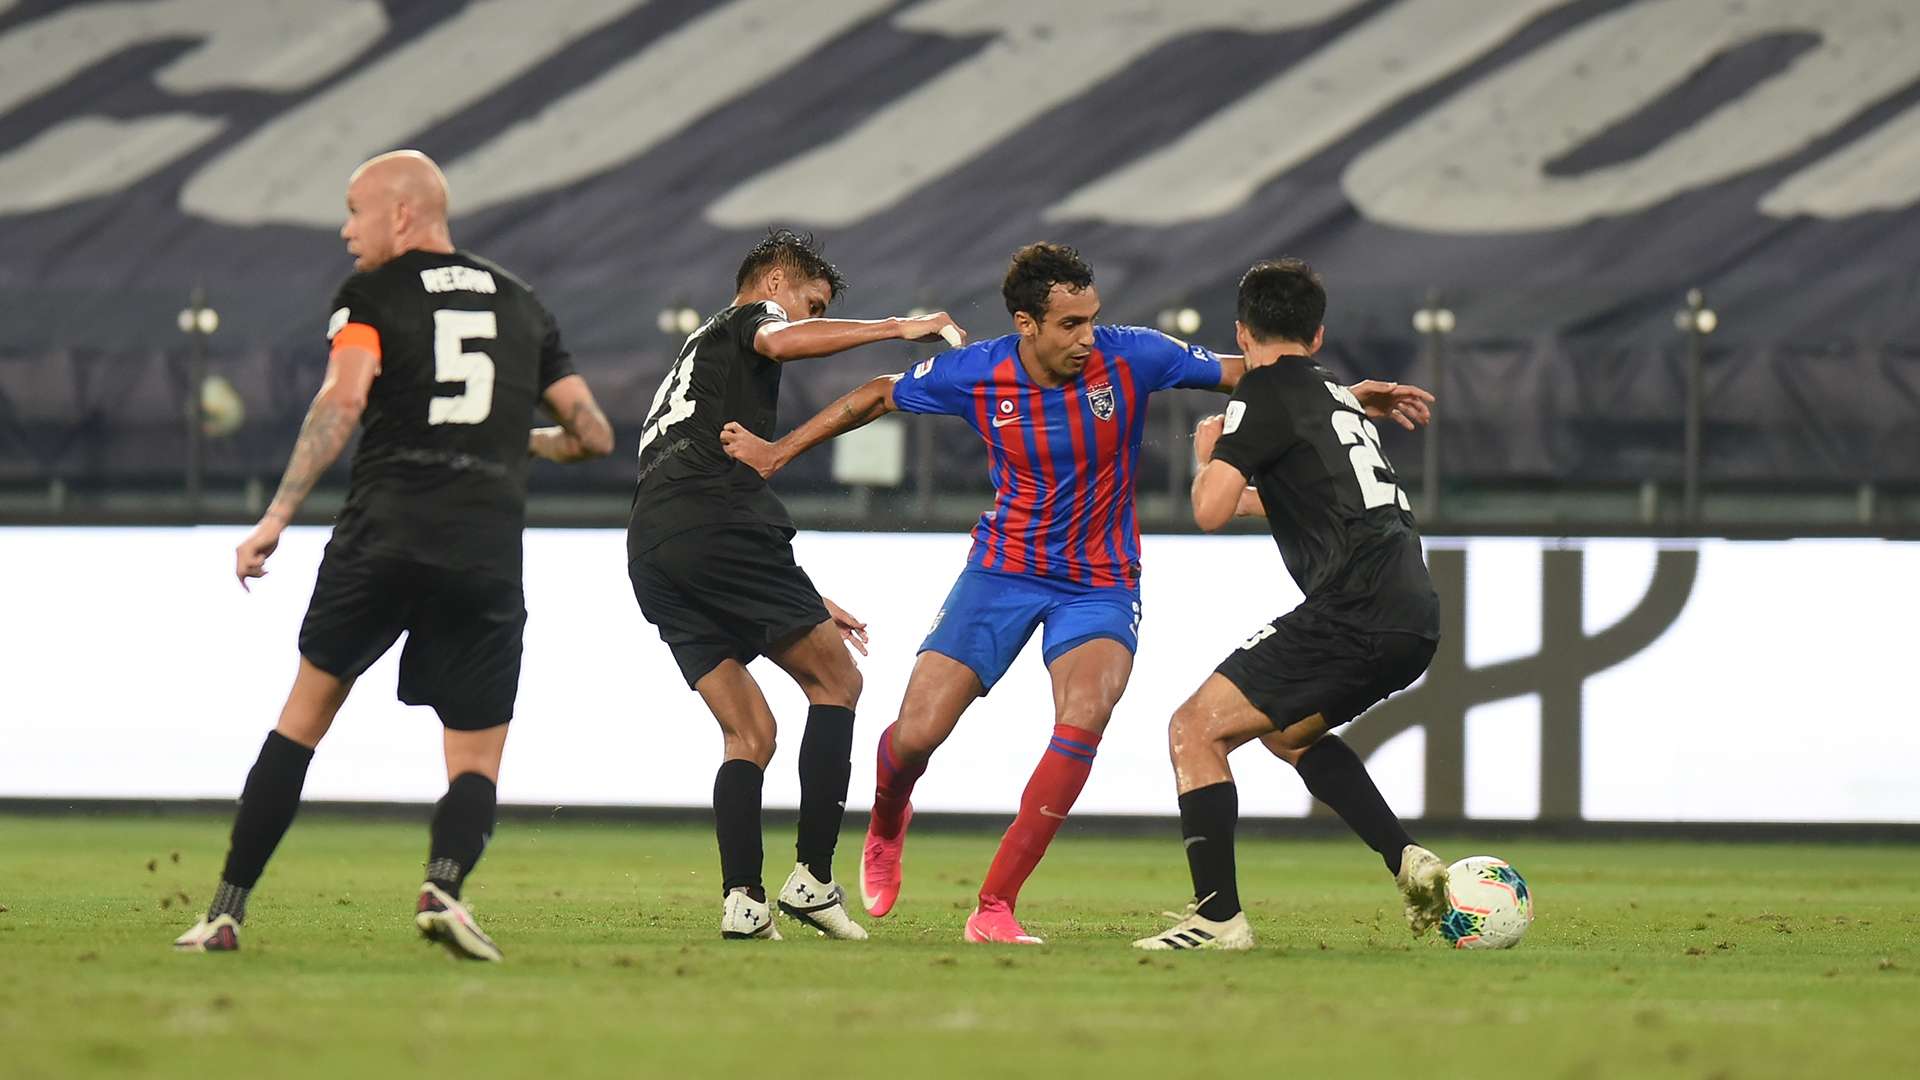 Diogo Luis Santo, Johor Darul Ta'zim v Selangor, Super League, 19 Sep 2020